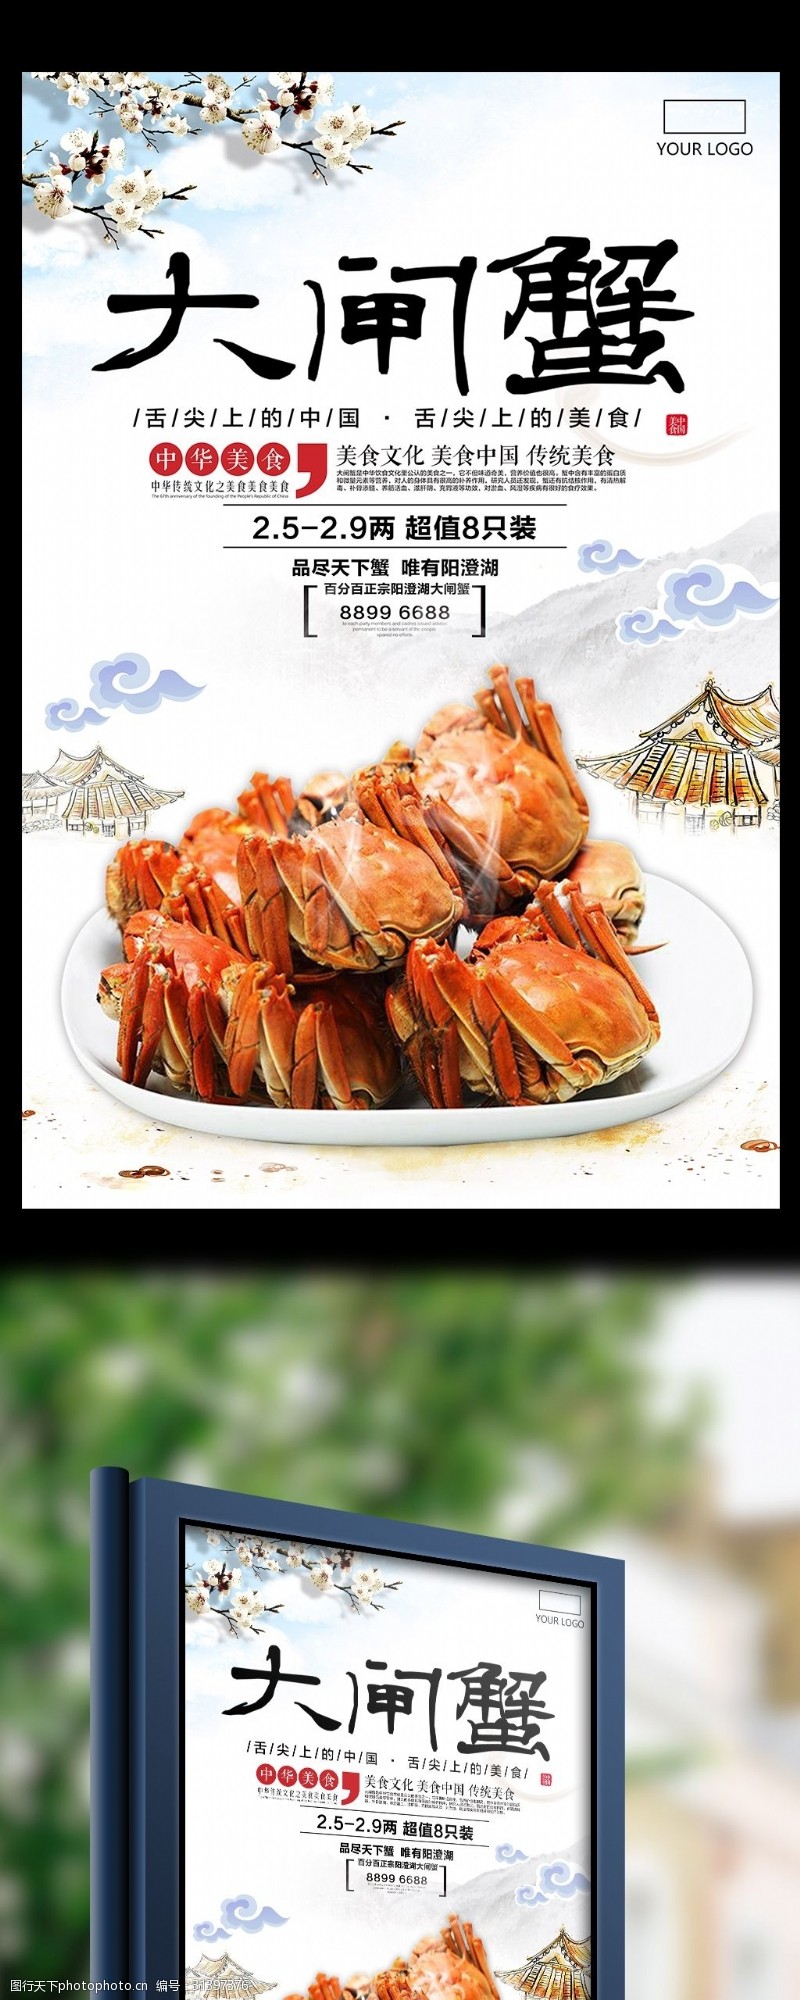 新品上市宣传中国风唯美大气大闸蟹促销海报